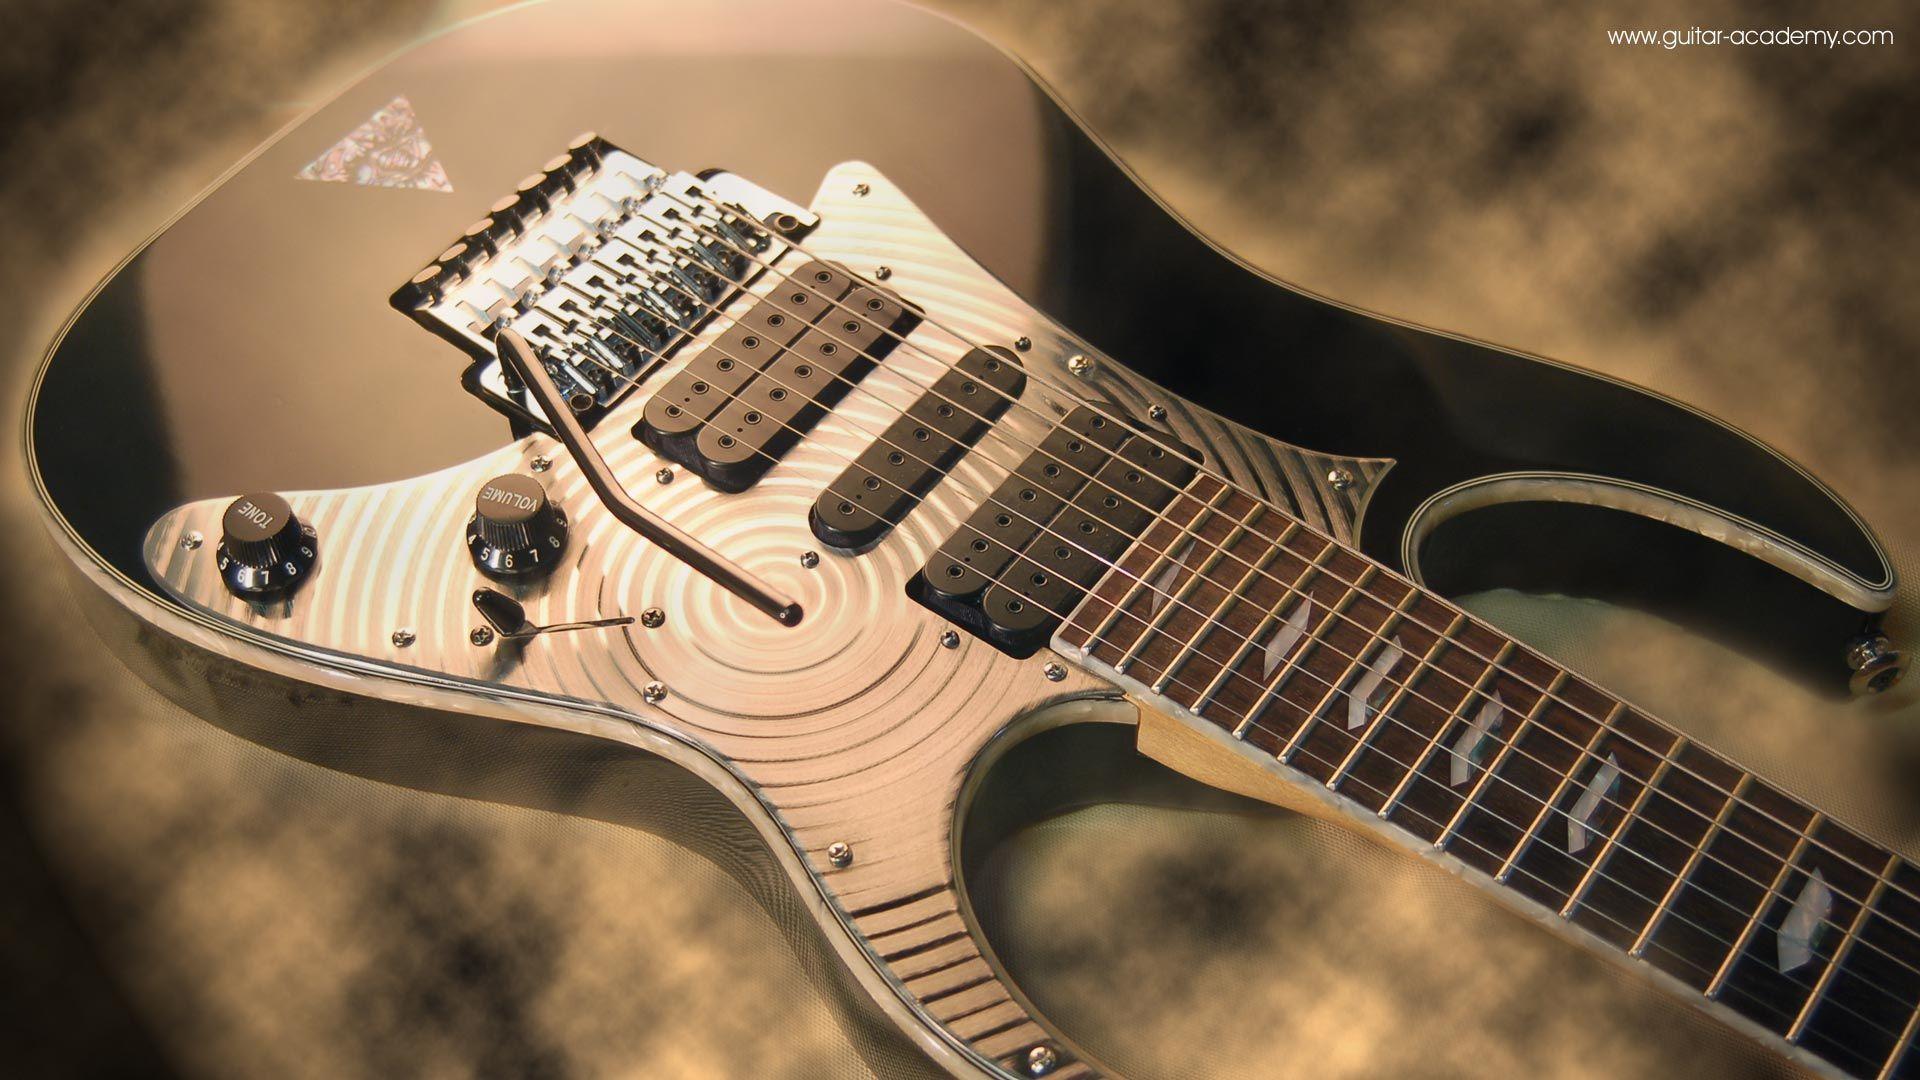 Cool Guitar HD Wallpaper. Guitars. Guitars, Ibanez